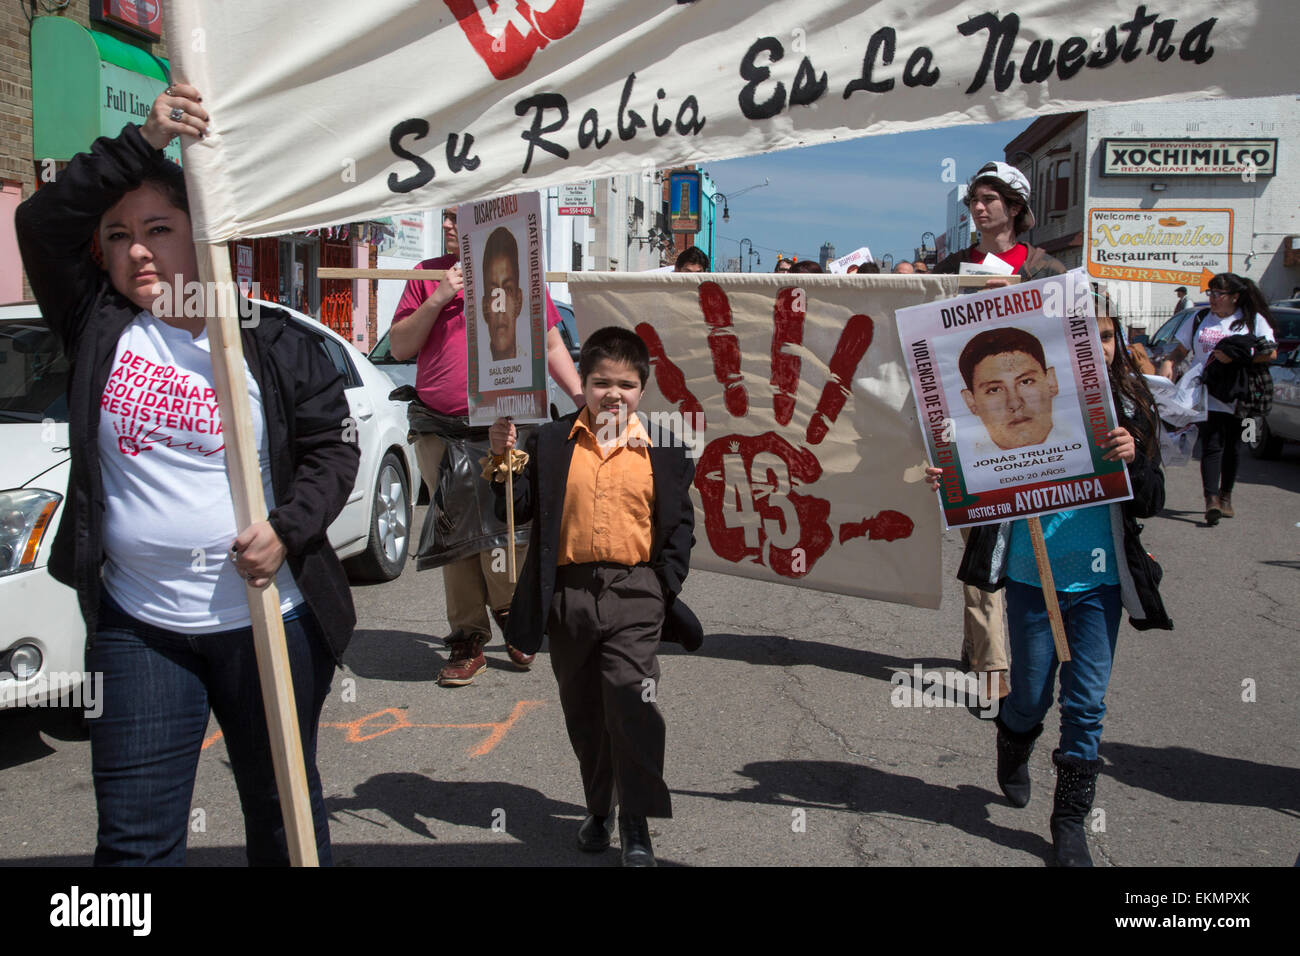 Detroit, Michigan, USA. 12 avril, 2015. Les manifestants ont défilé à travers le quartier mexico-Detroit pour protester contre la disparition de 43 septembre 2014 les élèves du collège des enseignants dans le sud de l'État mexicain de Guerrero. Les étudiants de Ayotzinapa Collège de formation des enseignants auraient été arrêtés par la police locale qui les a remis à un gang de la drogue. Parents de disparus s'est joint à la protestation ; ils se rendent dans les villes à travers les États-Unis pour raconter leur histoire. Crédit : Jim West/Alamy Live News Banque D'Images